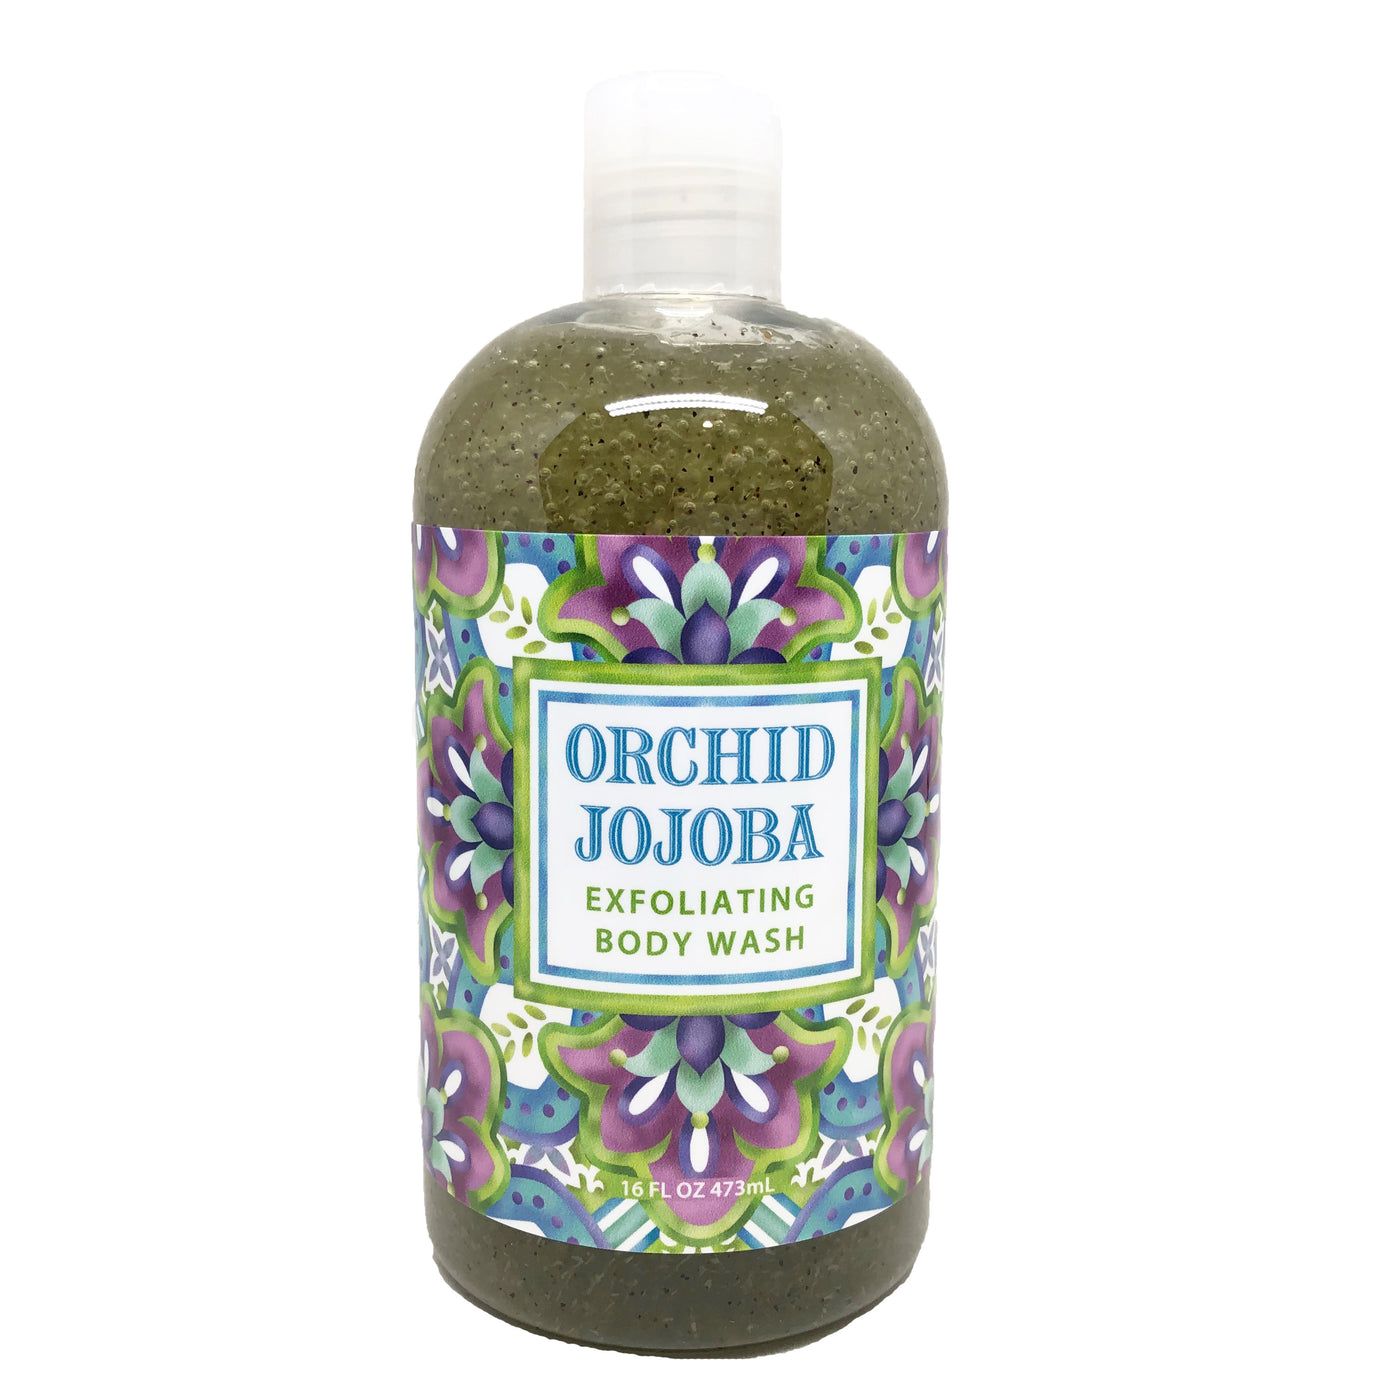 Orchid Jojoba Exfoliating Body Wash